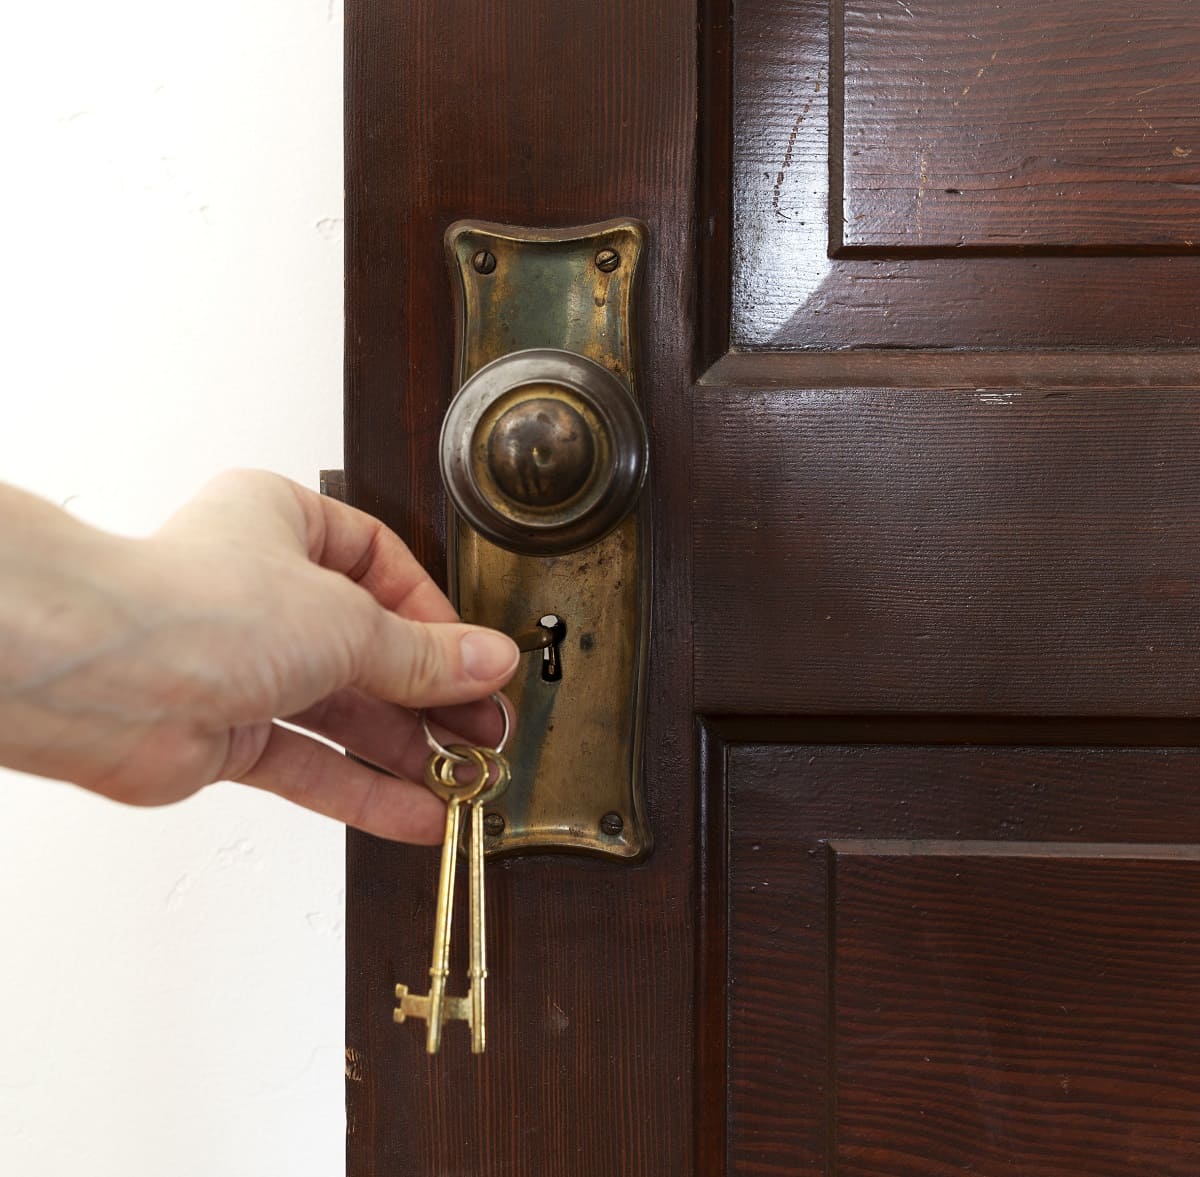 How To Pick Old Door Lock